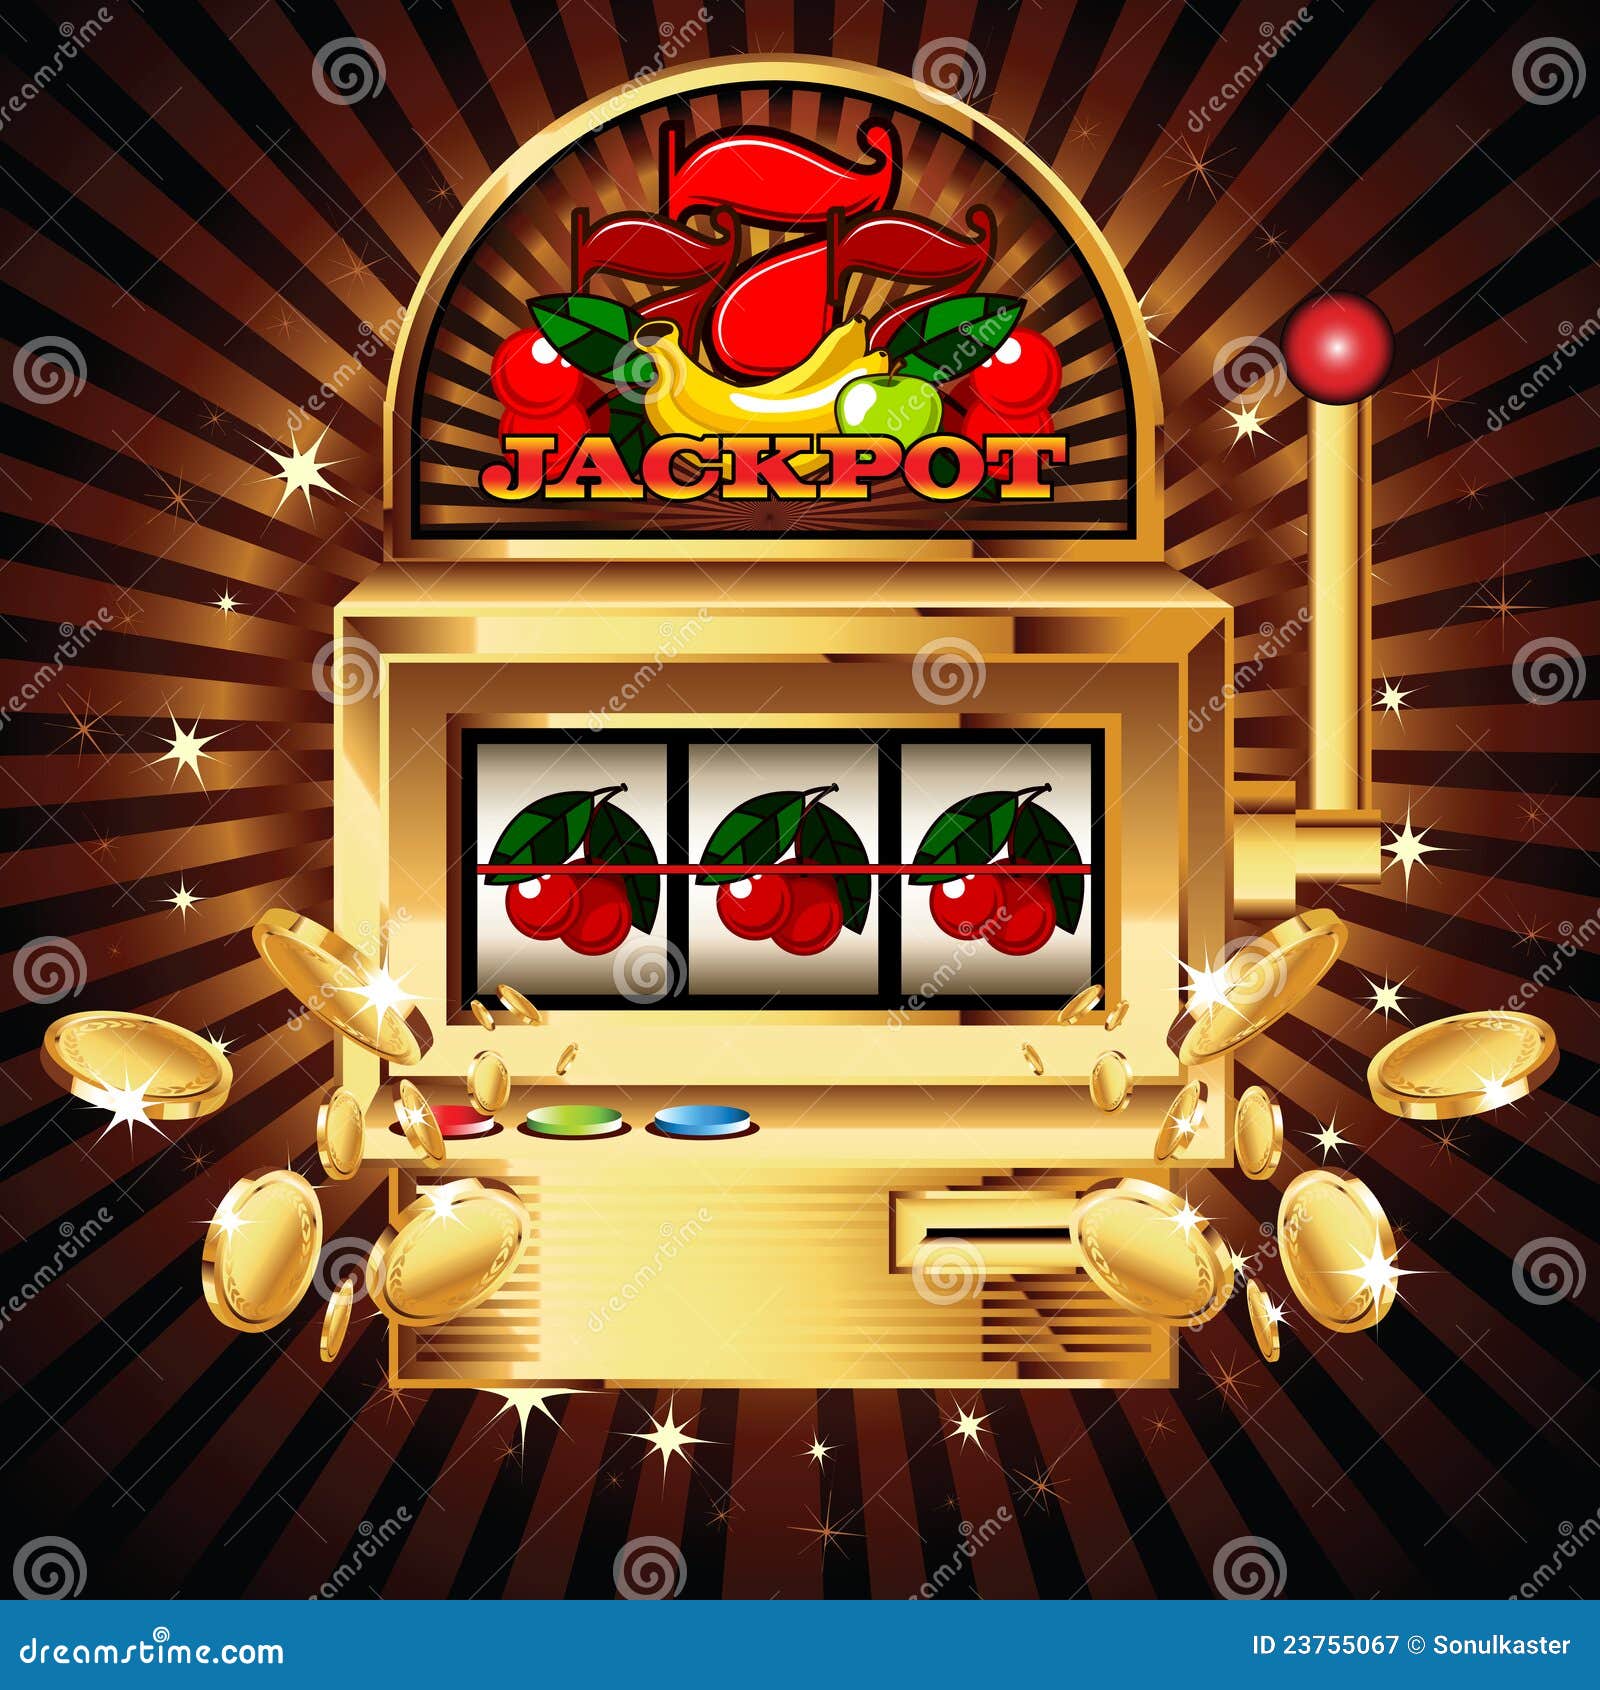 slot-machine-shiny-background-23755067.jpg